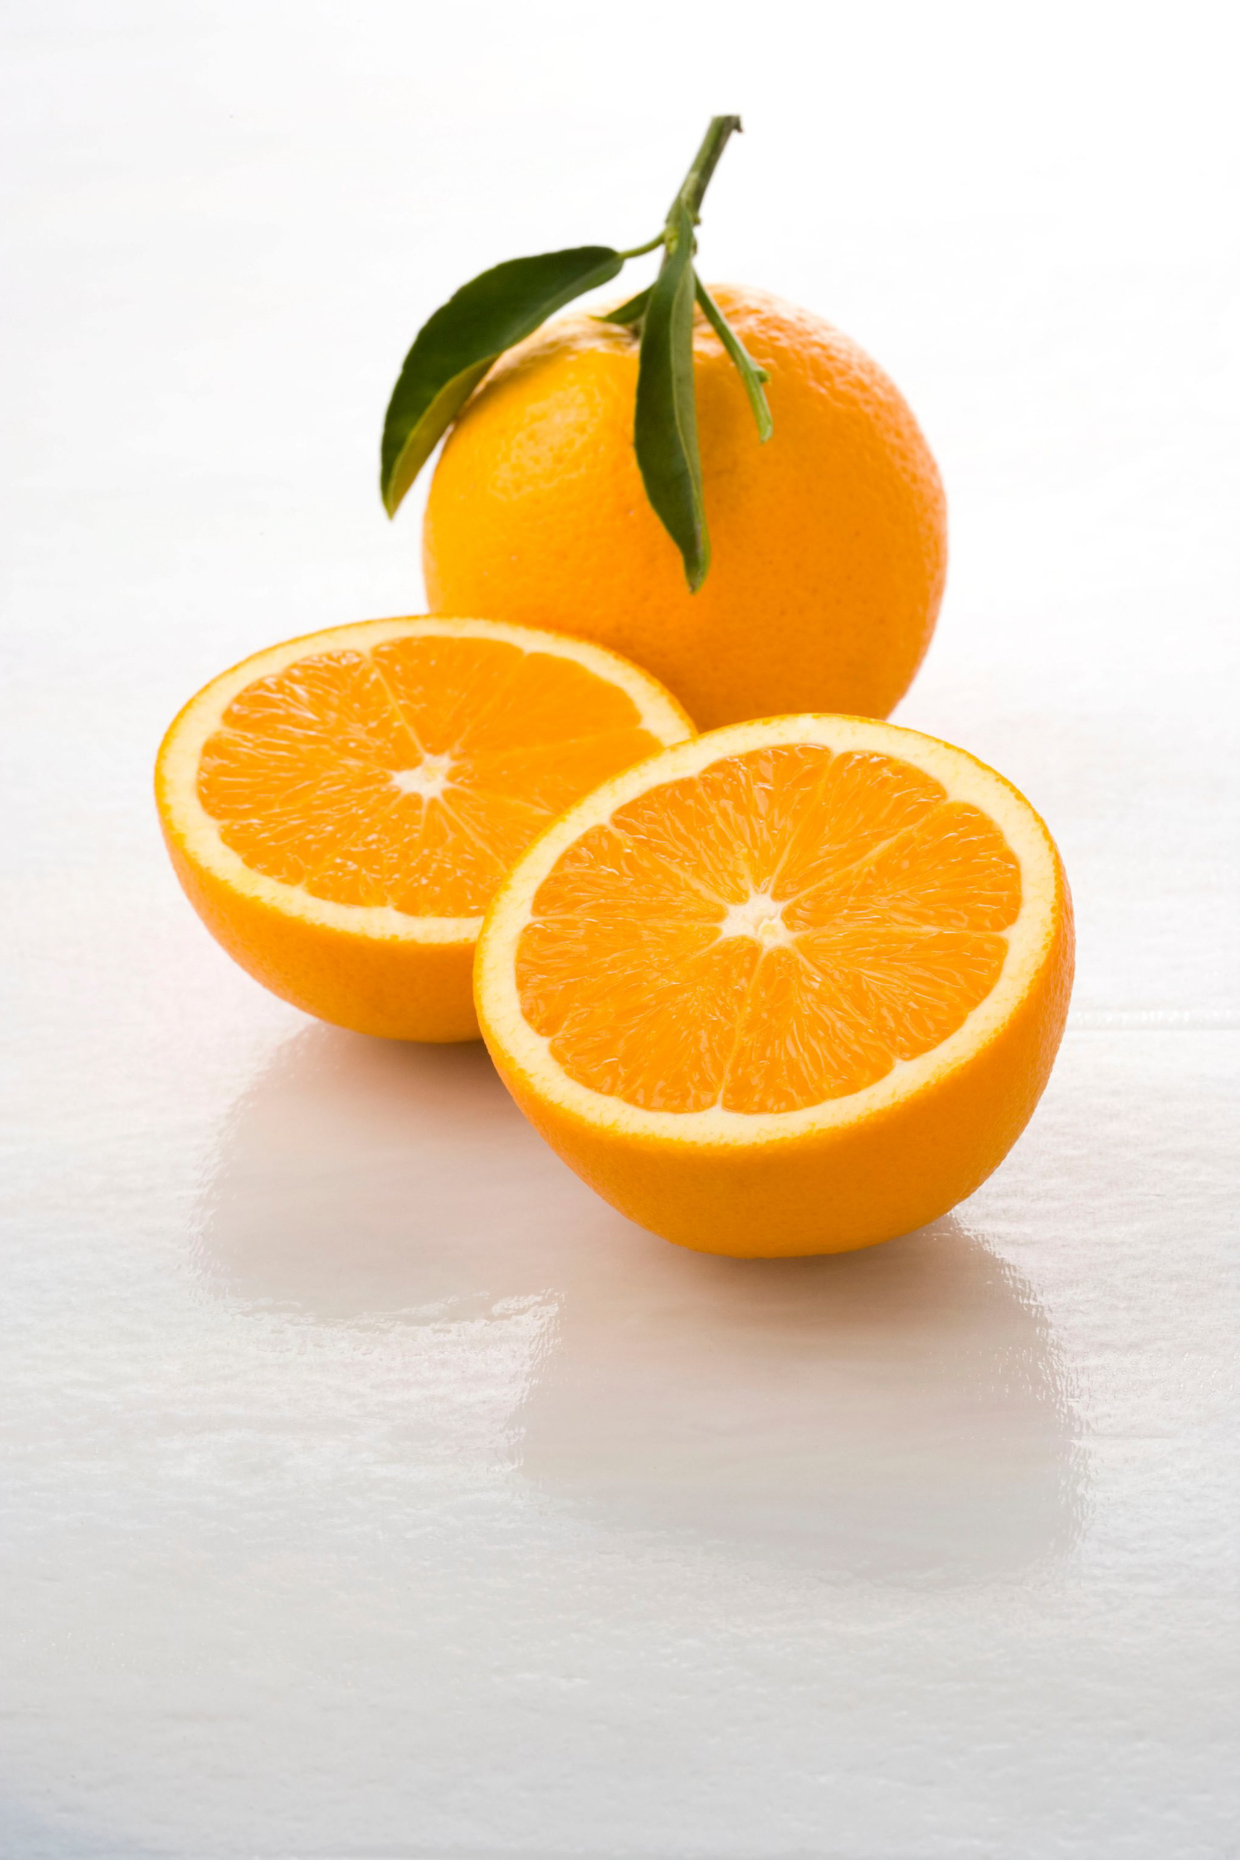 Oranges_S5E2138